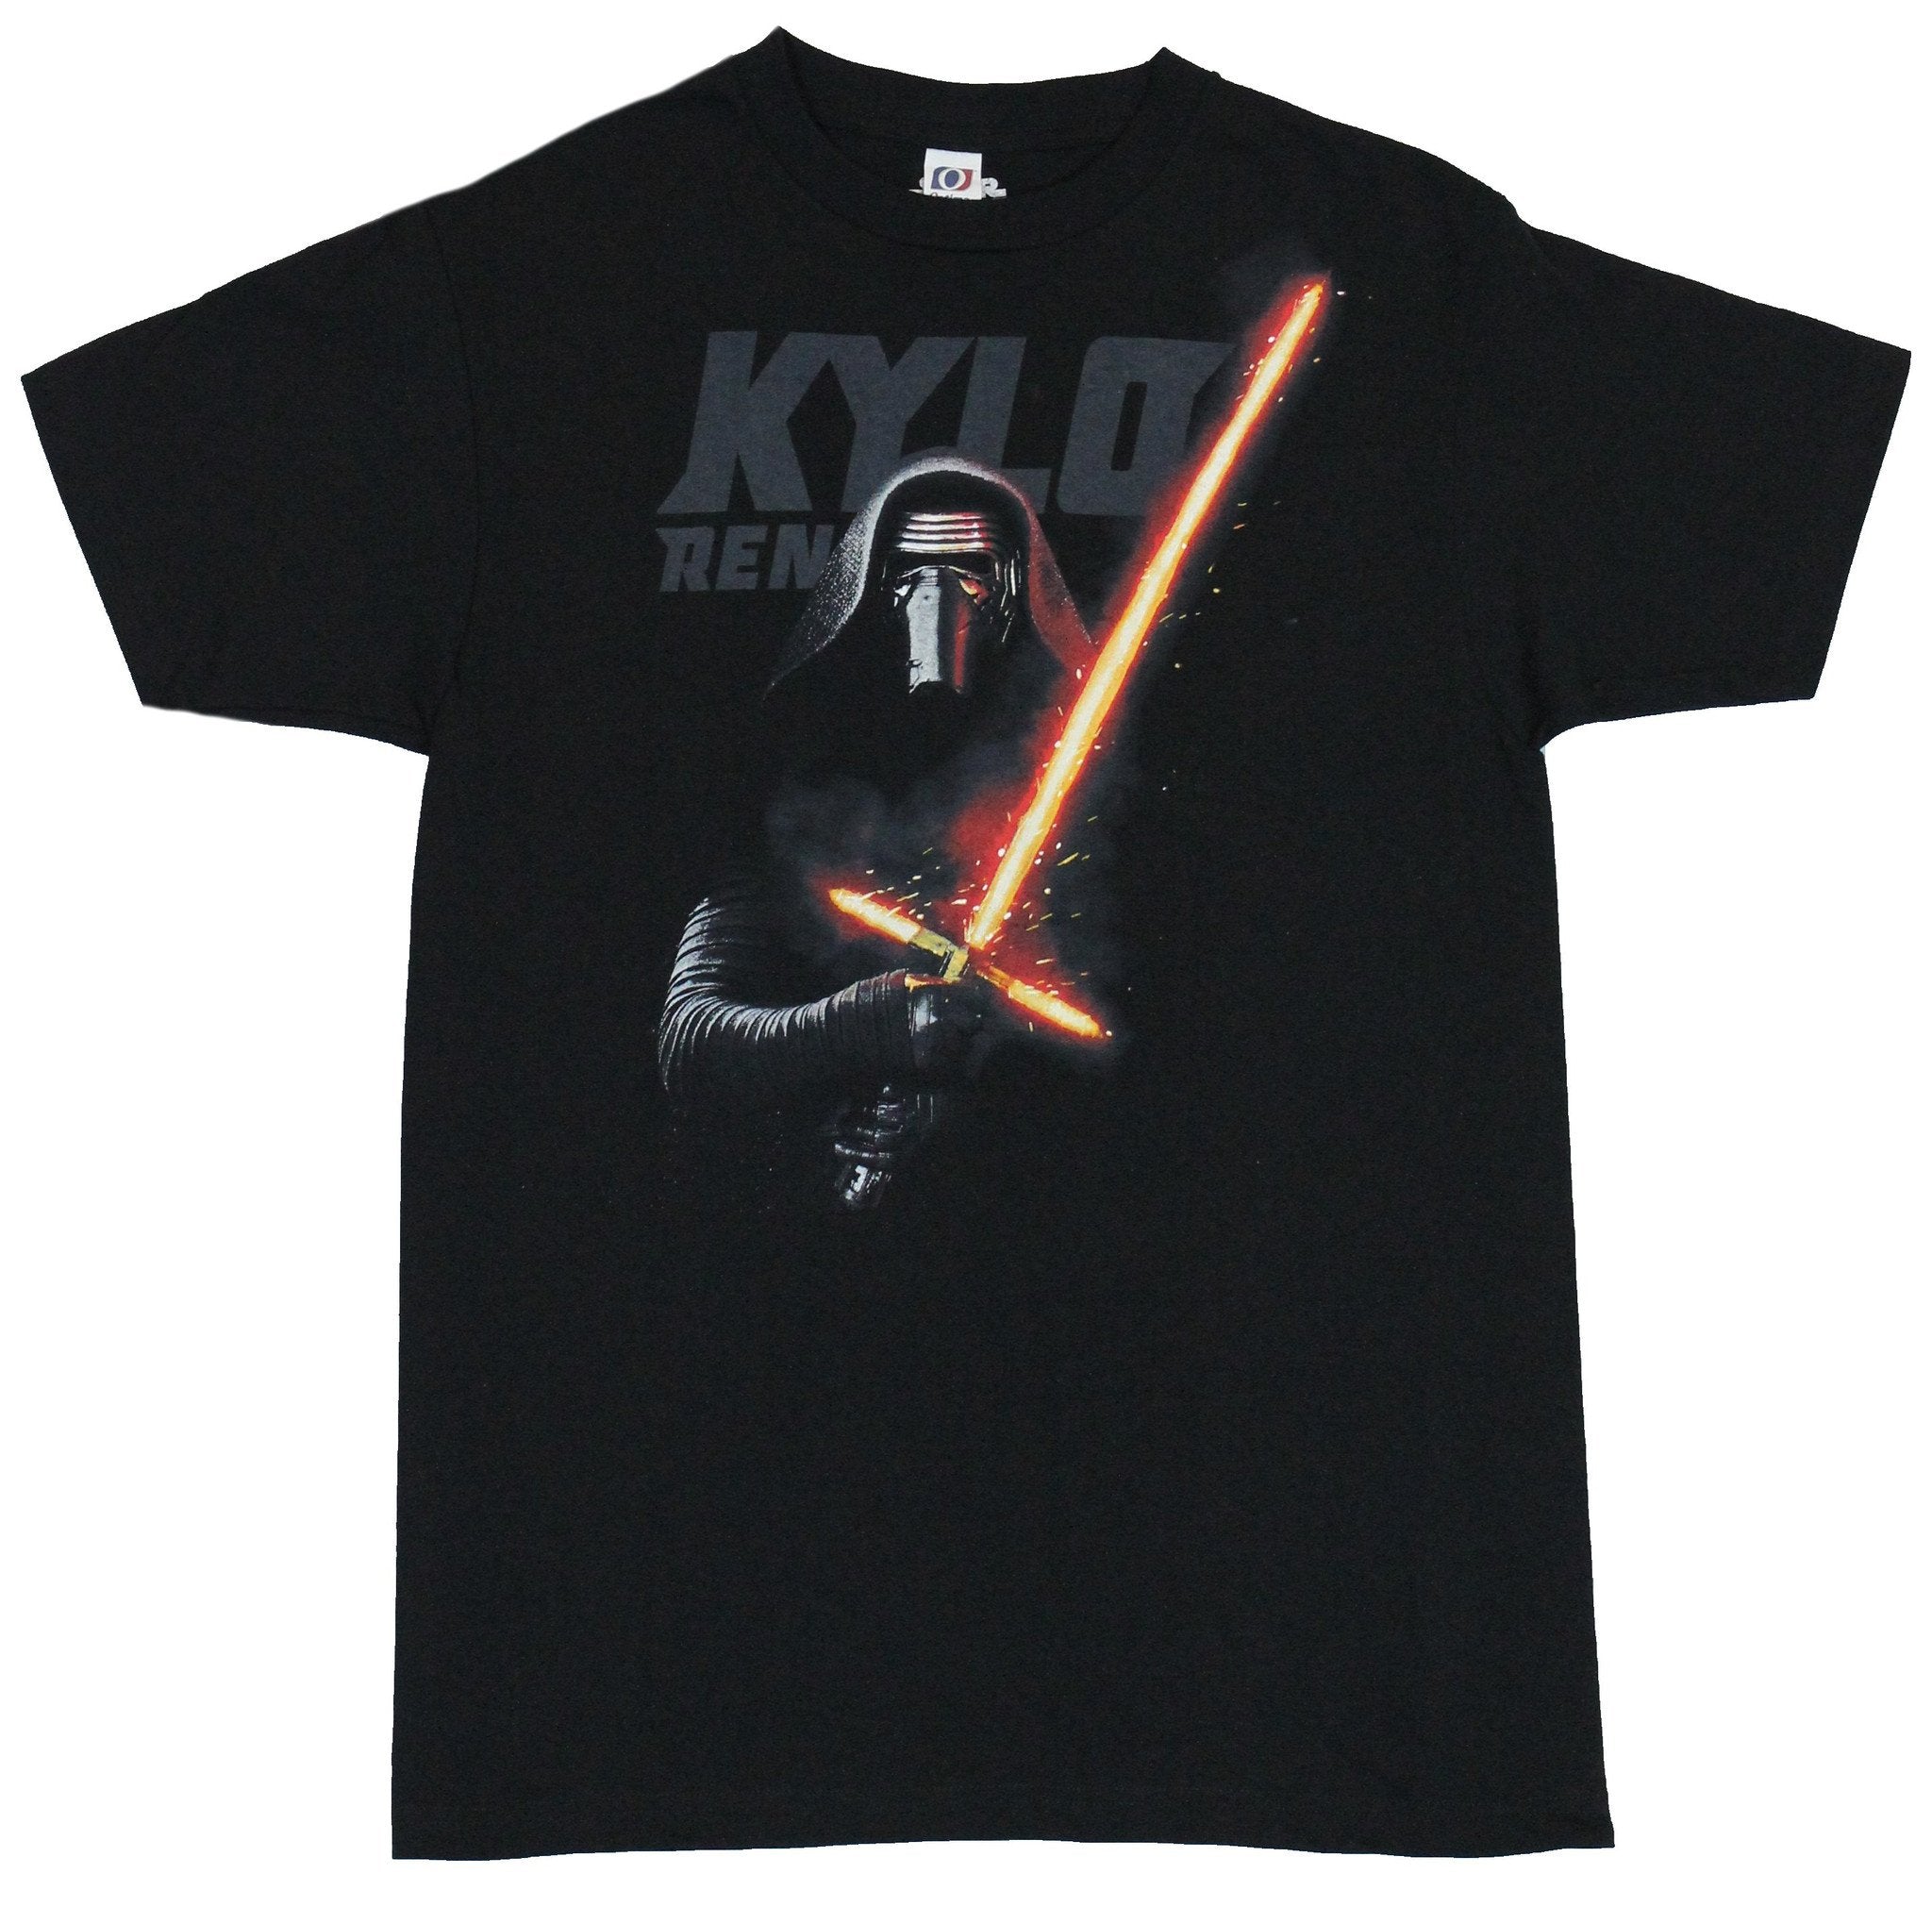 Star Wars Mens T-Shirt - Kylo Ren Saber Drawn Under Name Image